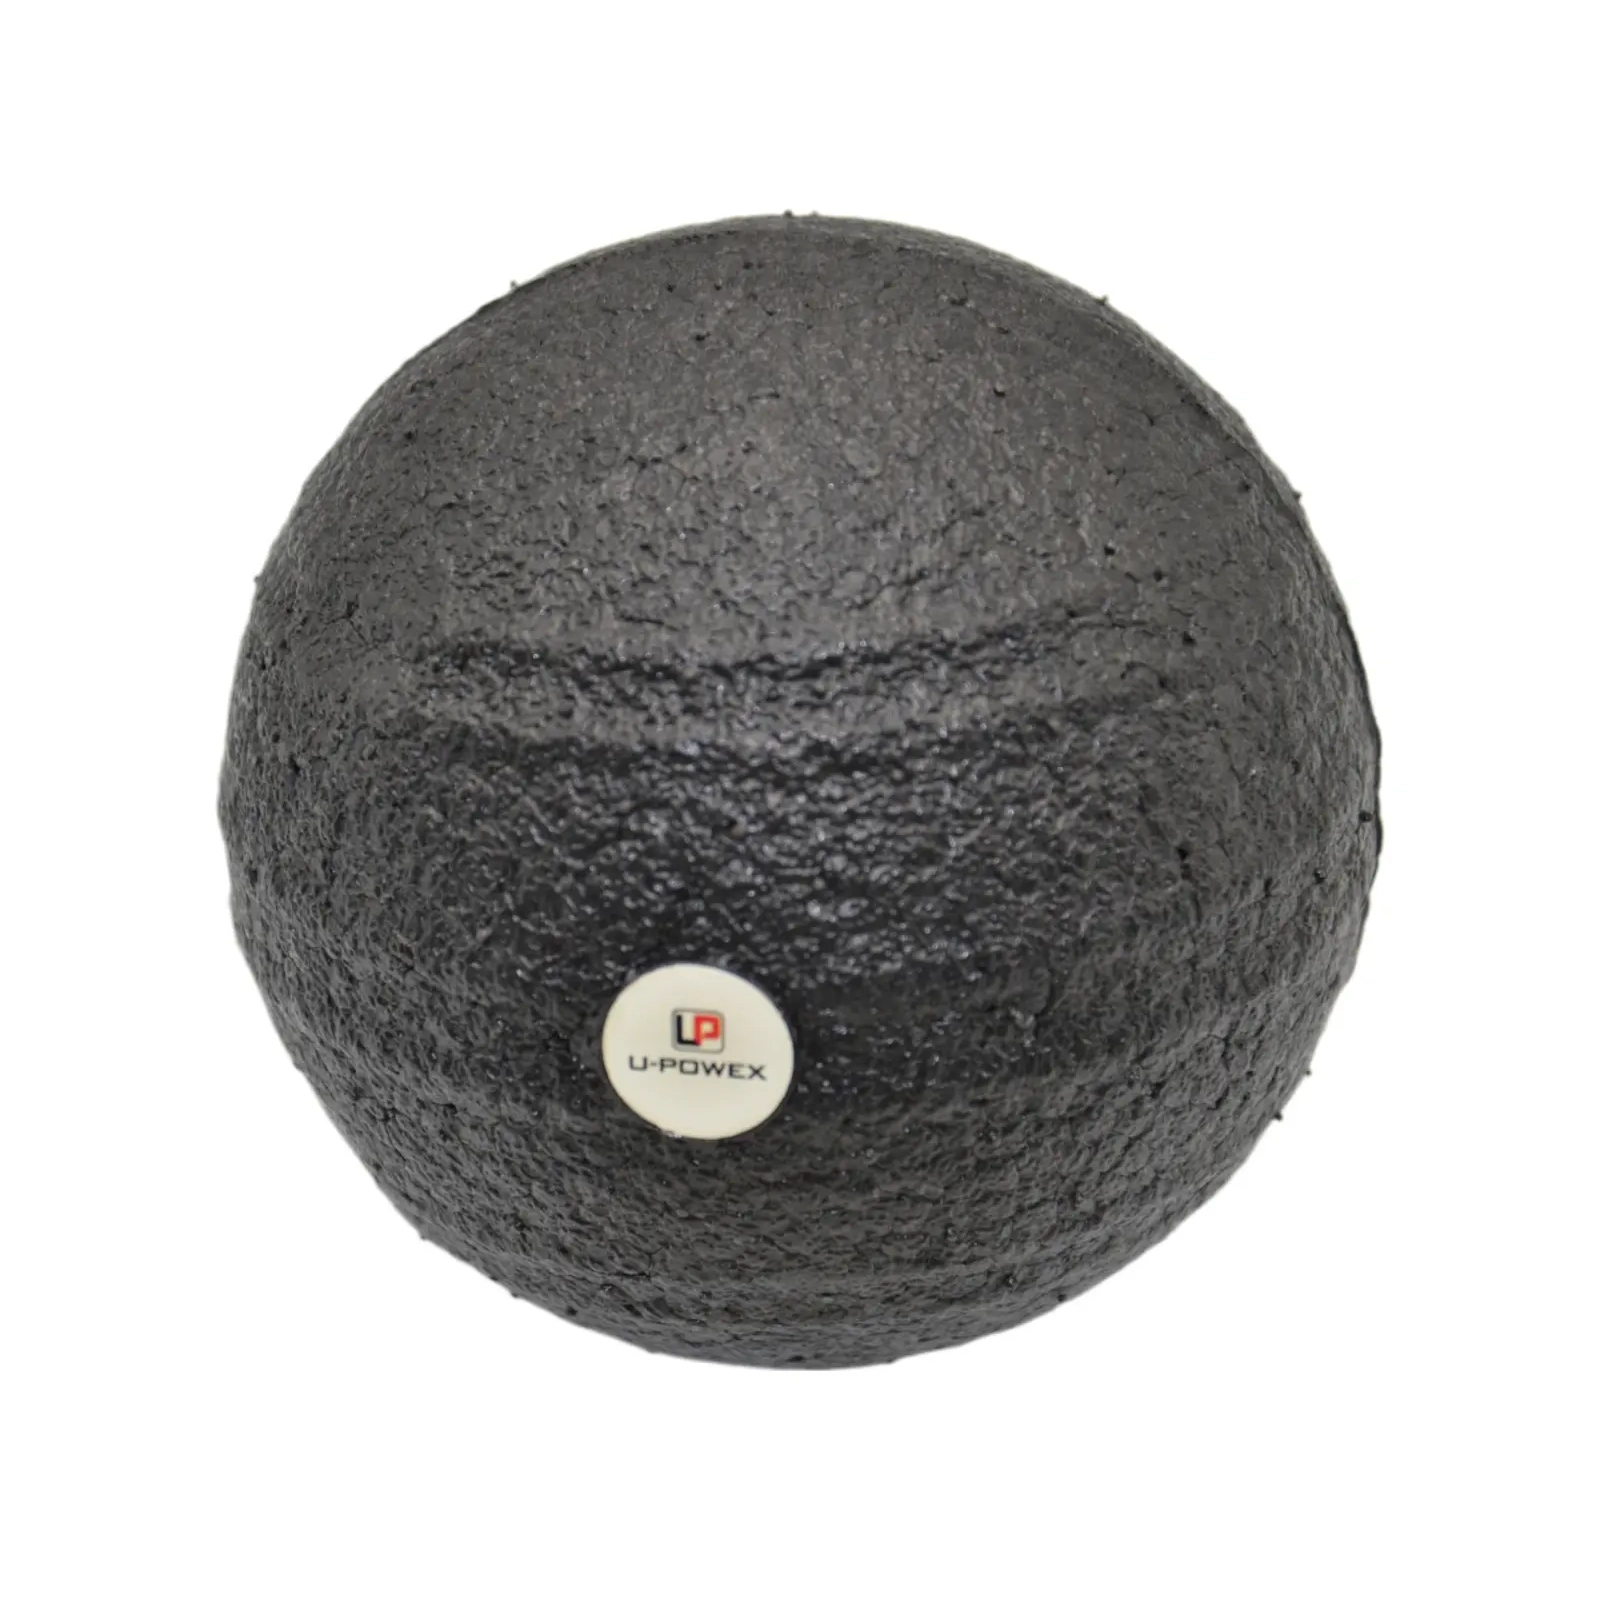 Массажный мяч U-Powex Epp foam ball d10 Black (UP_1003_Ball_D10cm) изображение 3